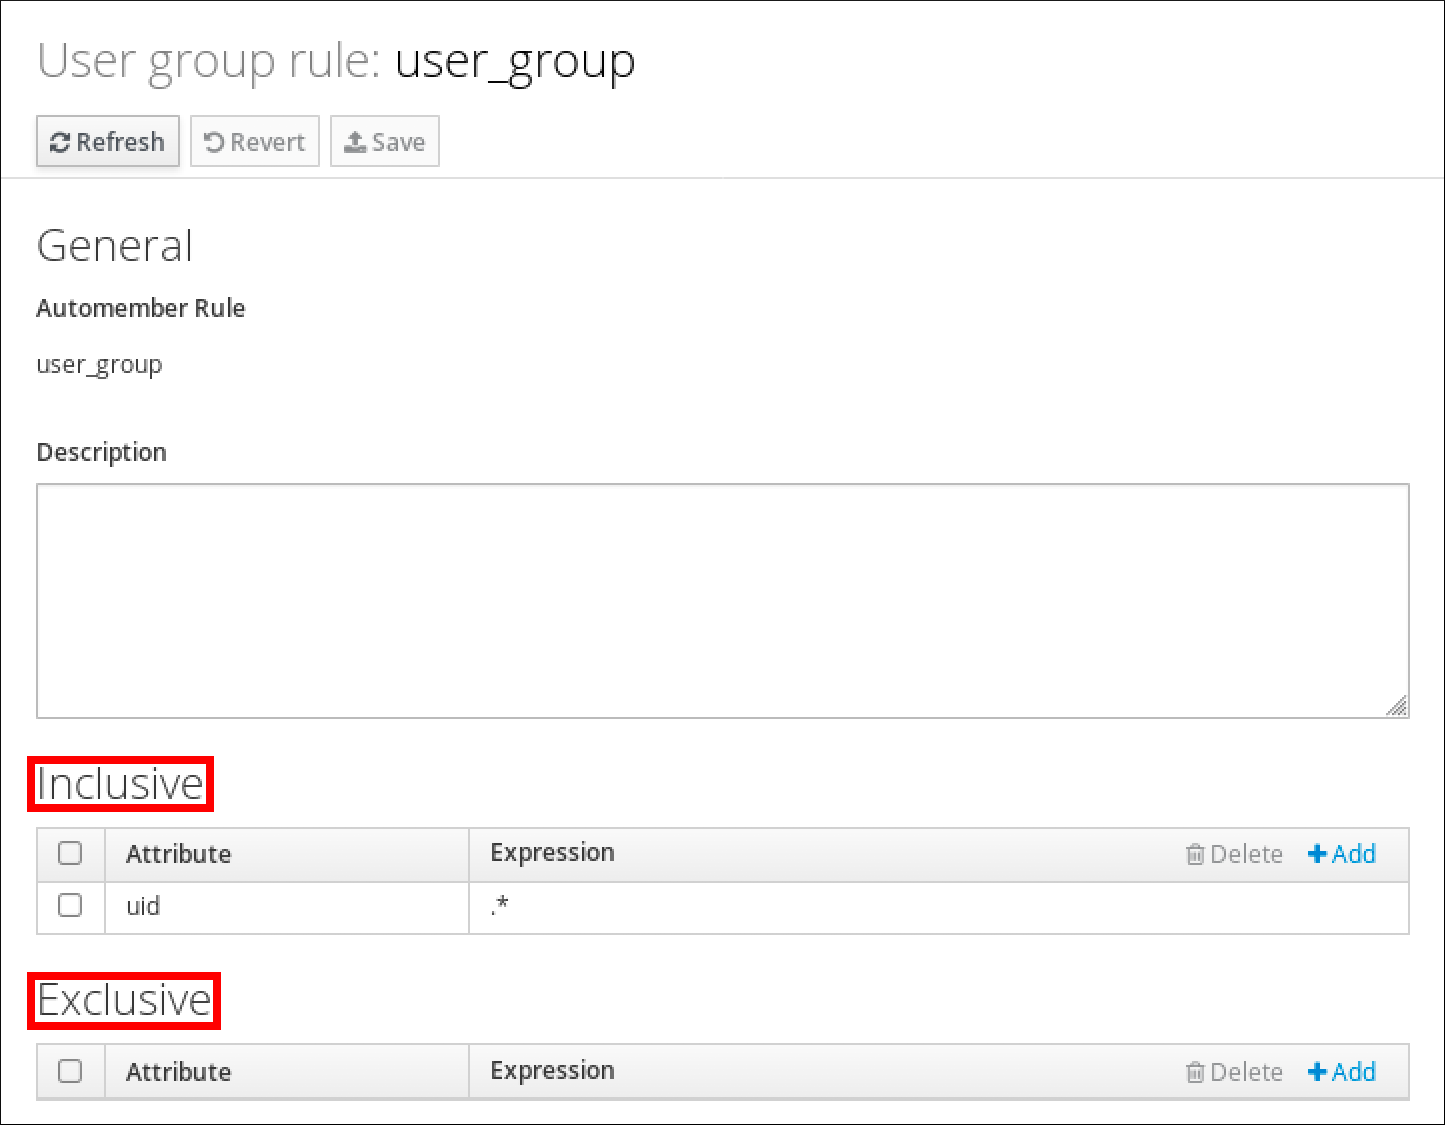 用户组规则"user_group"的详细信息的屏幕截图。有一个"General"部分，其中显示了自动成员规则的名称和"描述"。底部有一个"Inclusive"部分，其中有一个表，显示标有"Attribute"和"Expression"列的条目。此表有一个条目，其中 uid 作为 Attribute，.* 作为 Expression。在底部有一个"Exclusive"部分，其中有一个表，其与"Inclusive"表结构相匹配，但没有条目。